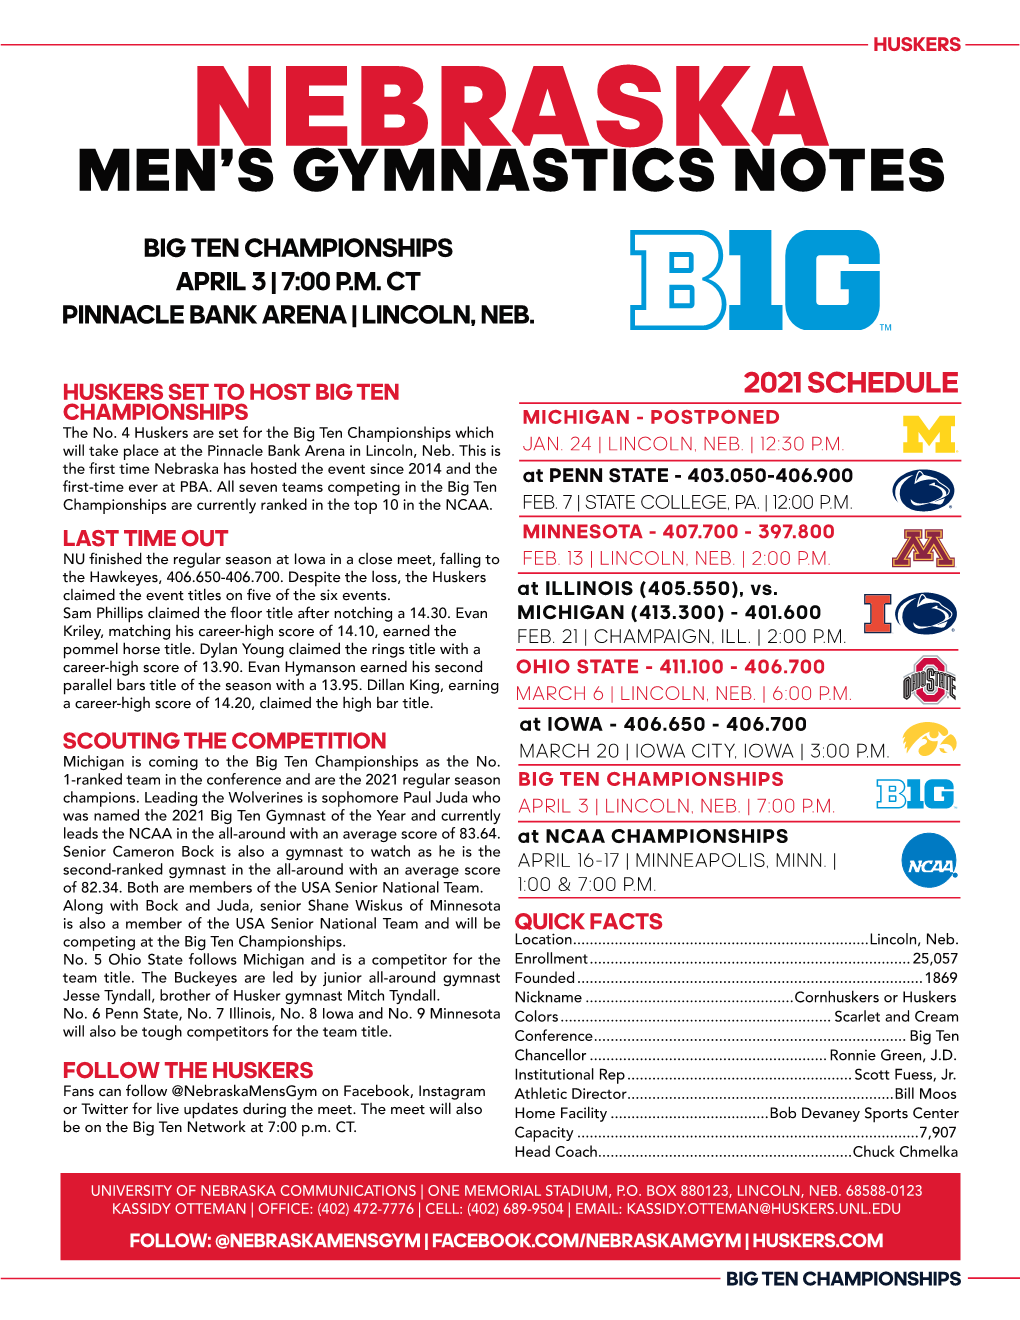 Men's Gymnastics Notes